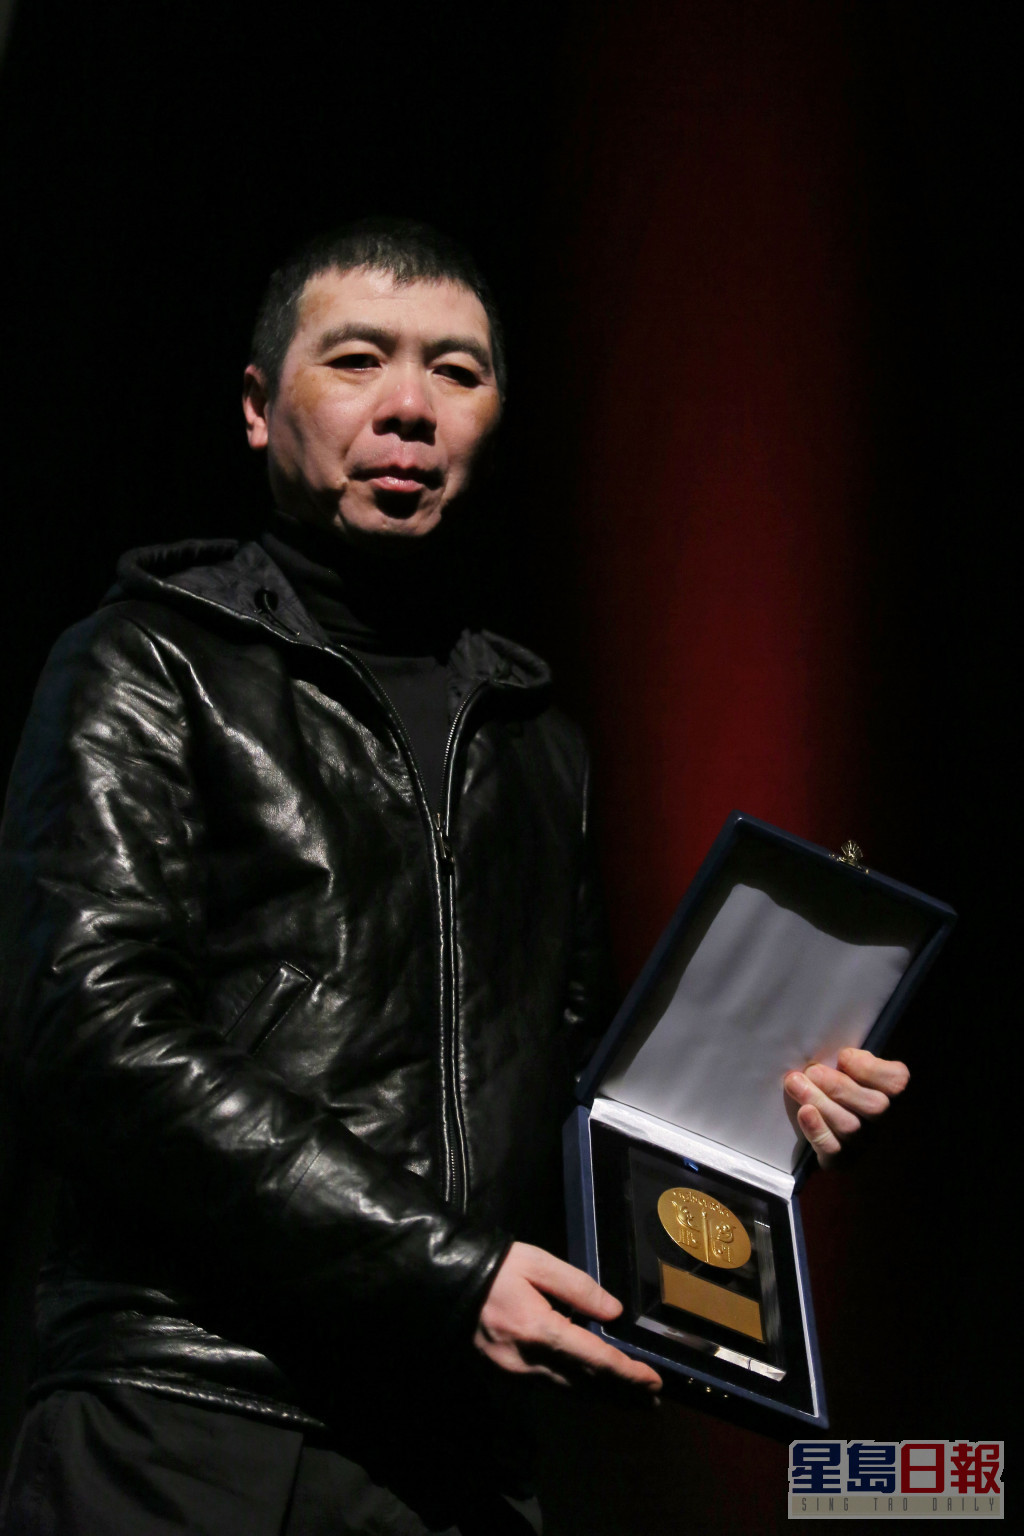 冯小刚曾以作品扬威多个外国影展。